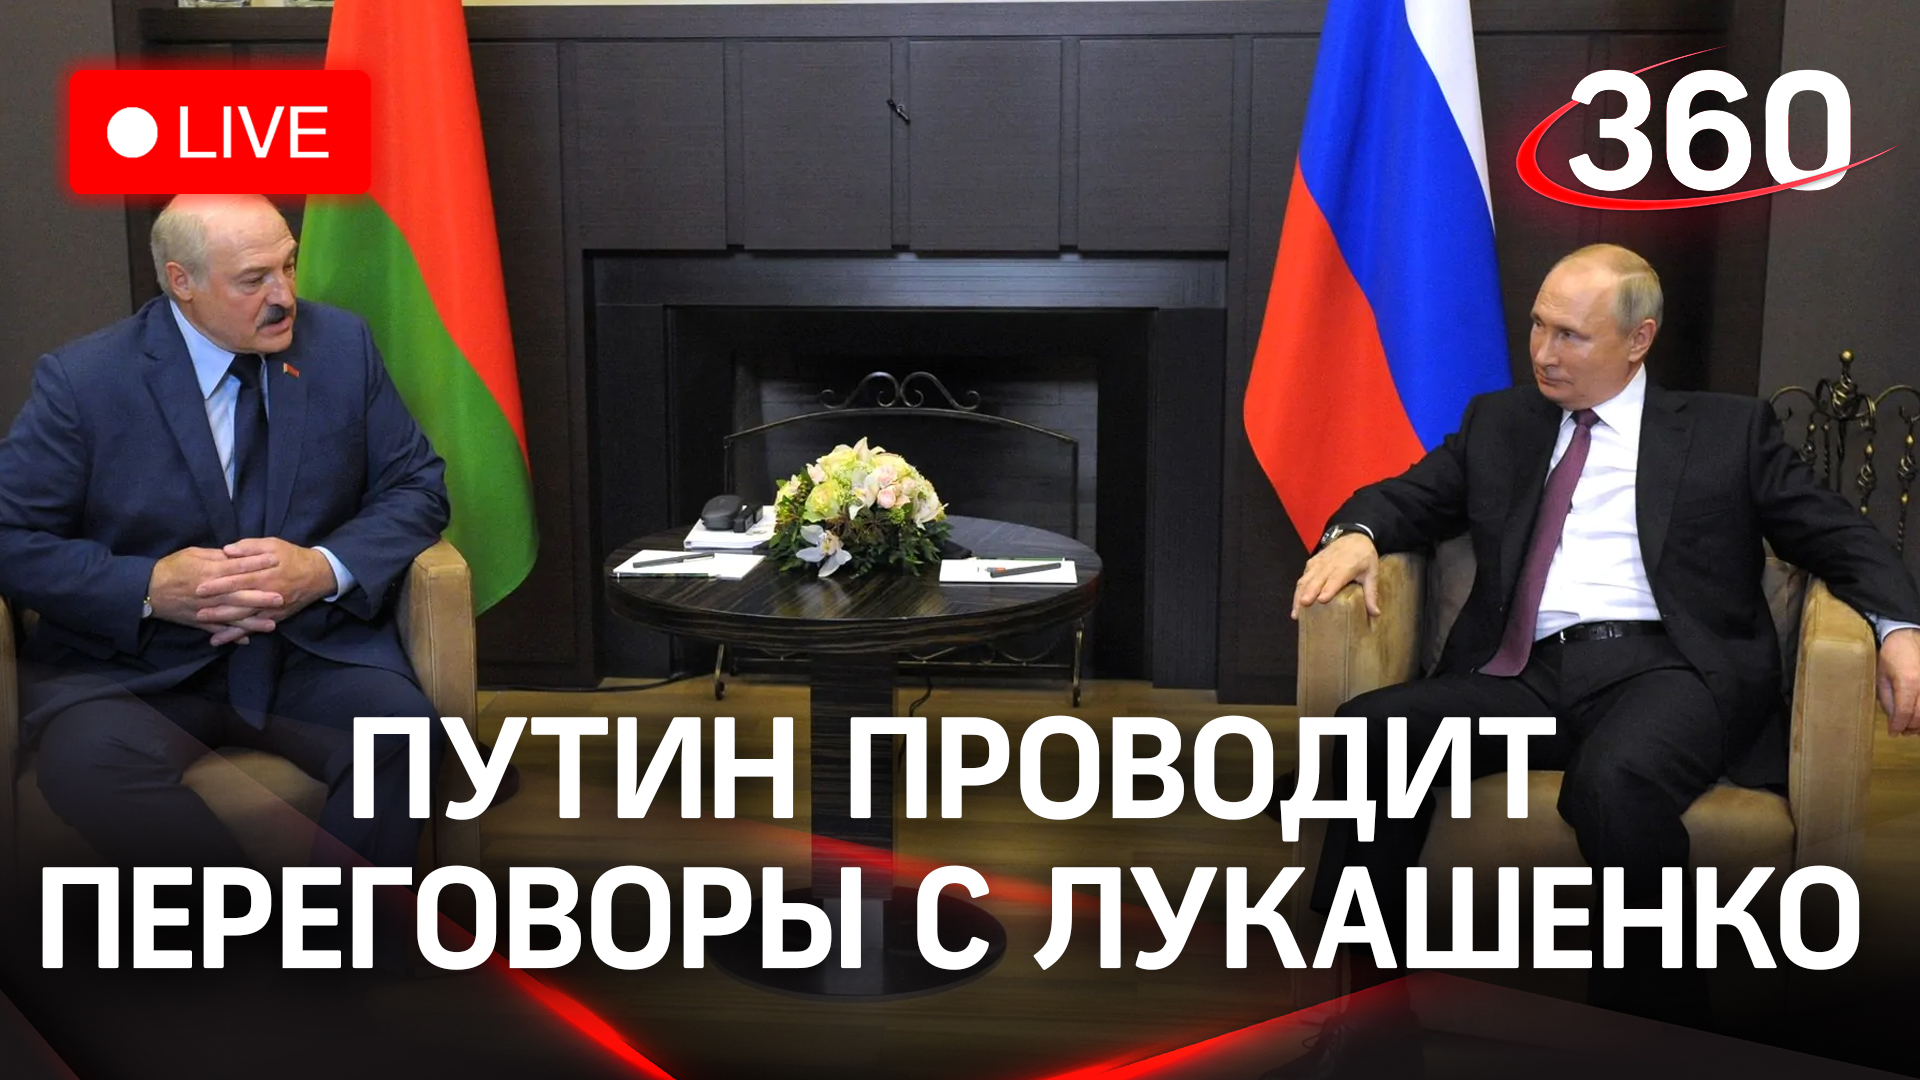 Встреча Владимира Путина и Александра Лукашенко в Петербурге | 23 июля. Прямая трансляция